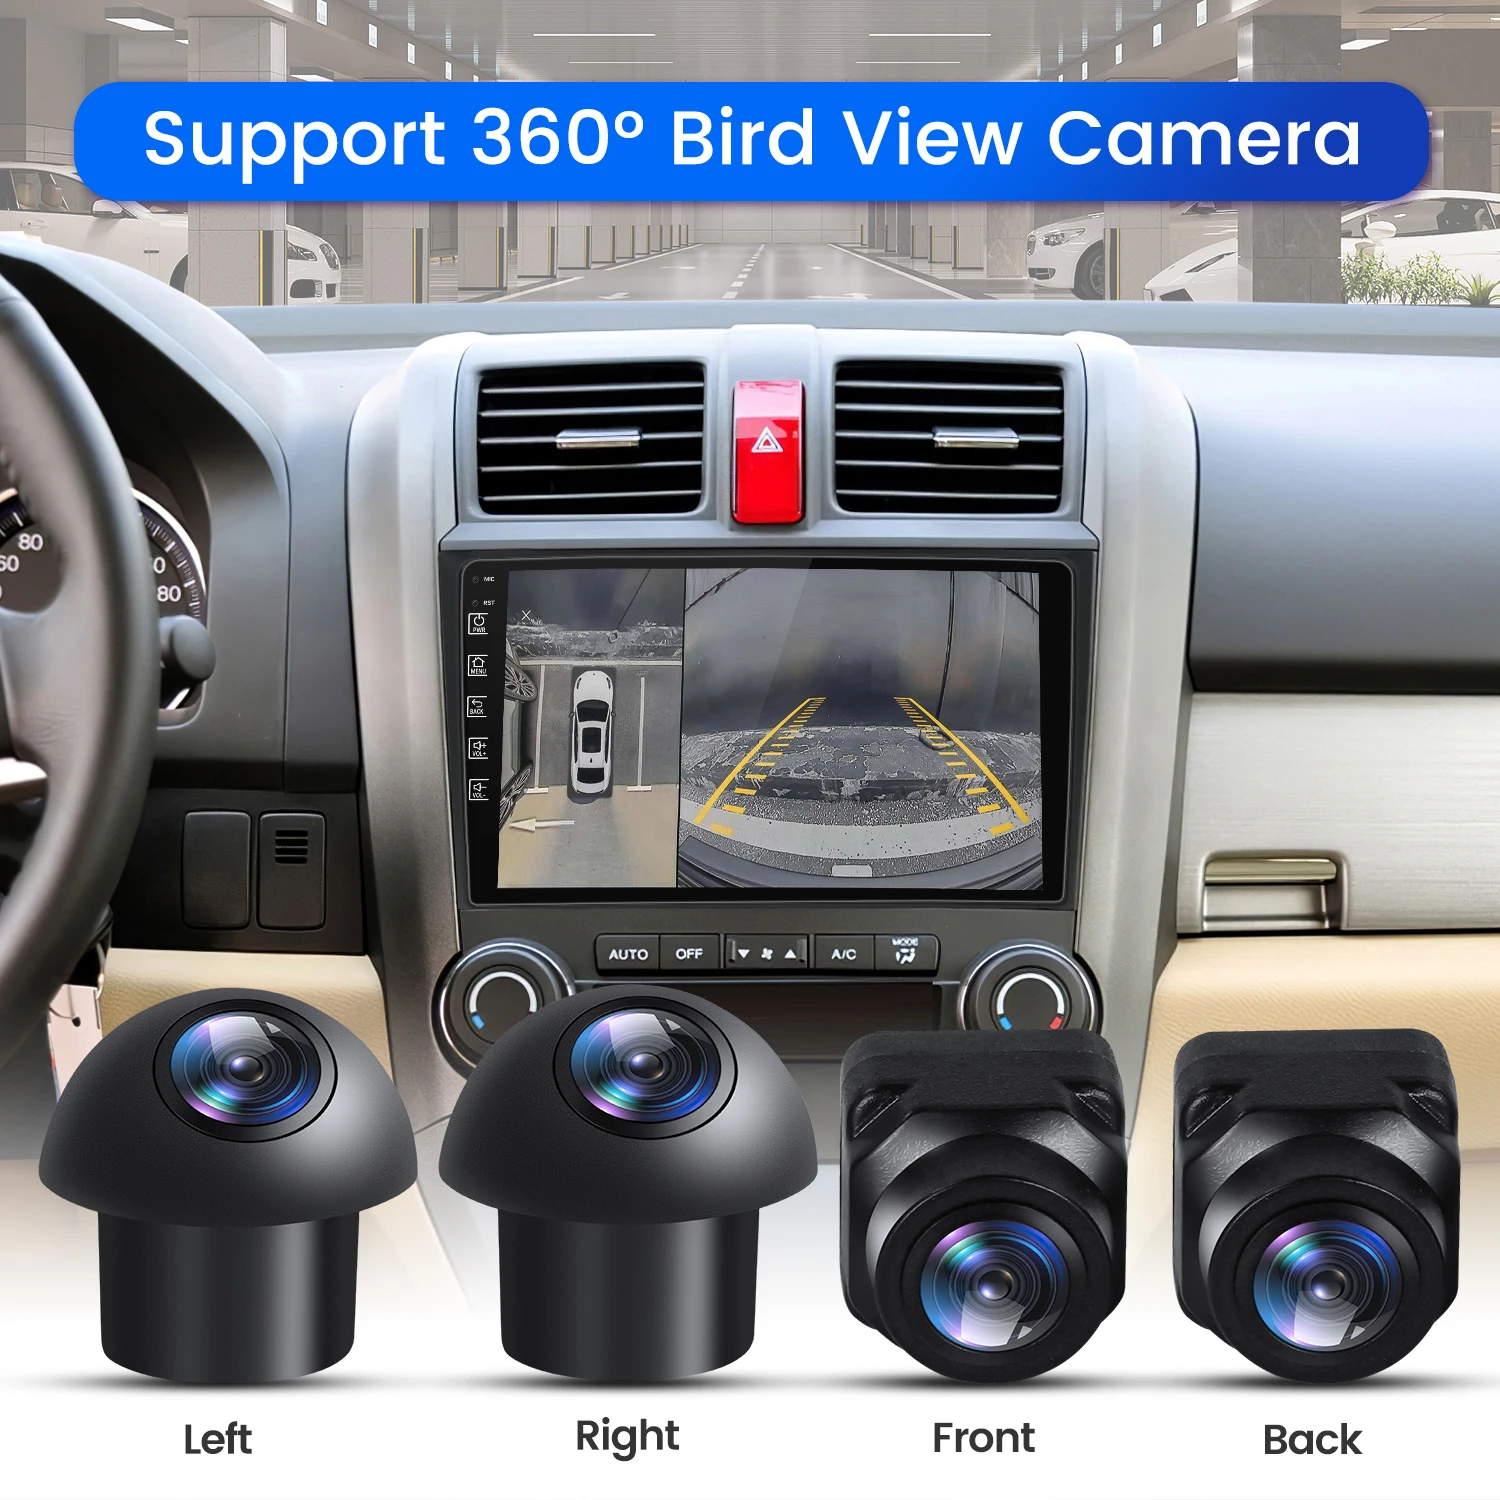 Caméra multi-angle 3D HD pour voiture, système de vue panoramique Surround  View, résistant à 360 °, Bird View - AliExpress